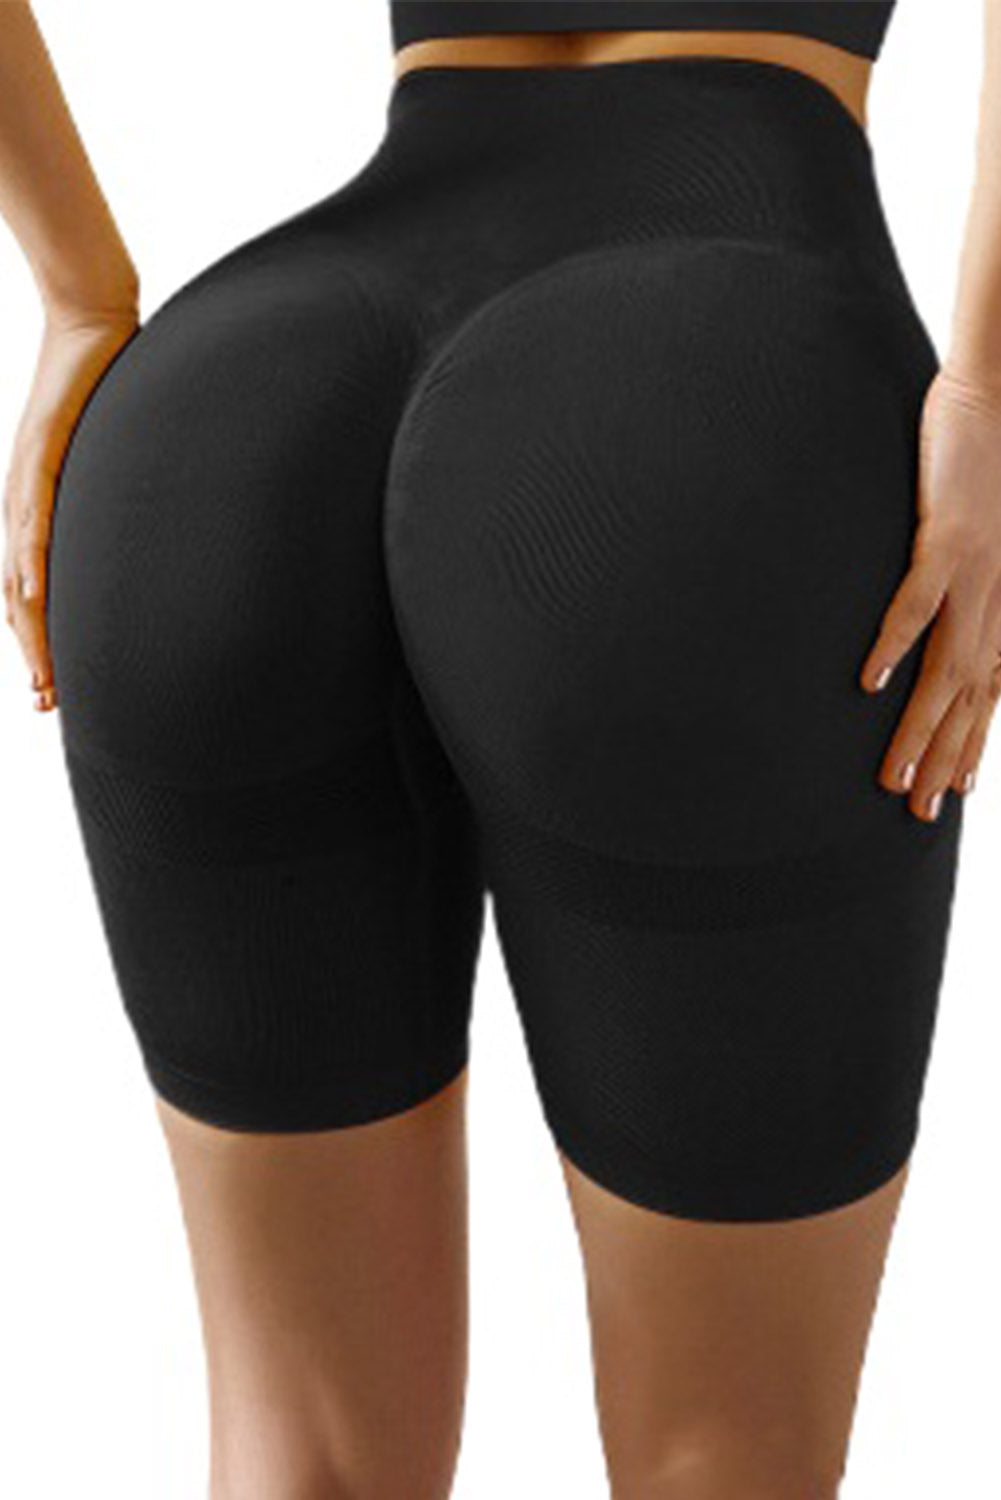 Black Slim Fit Hip Push Up High Waist Yoga Sport Shorts - EBEPEX